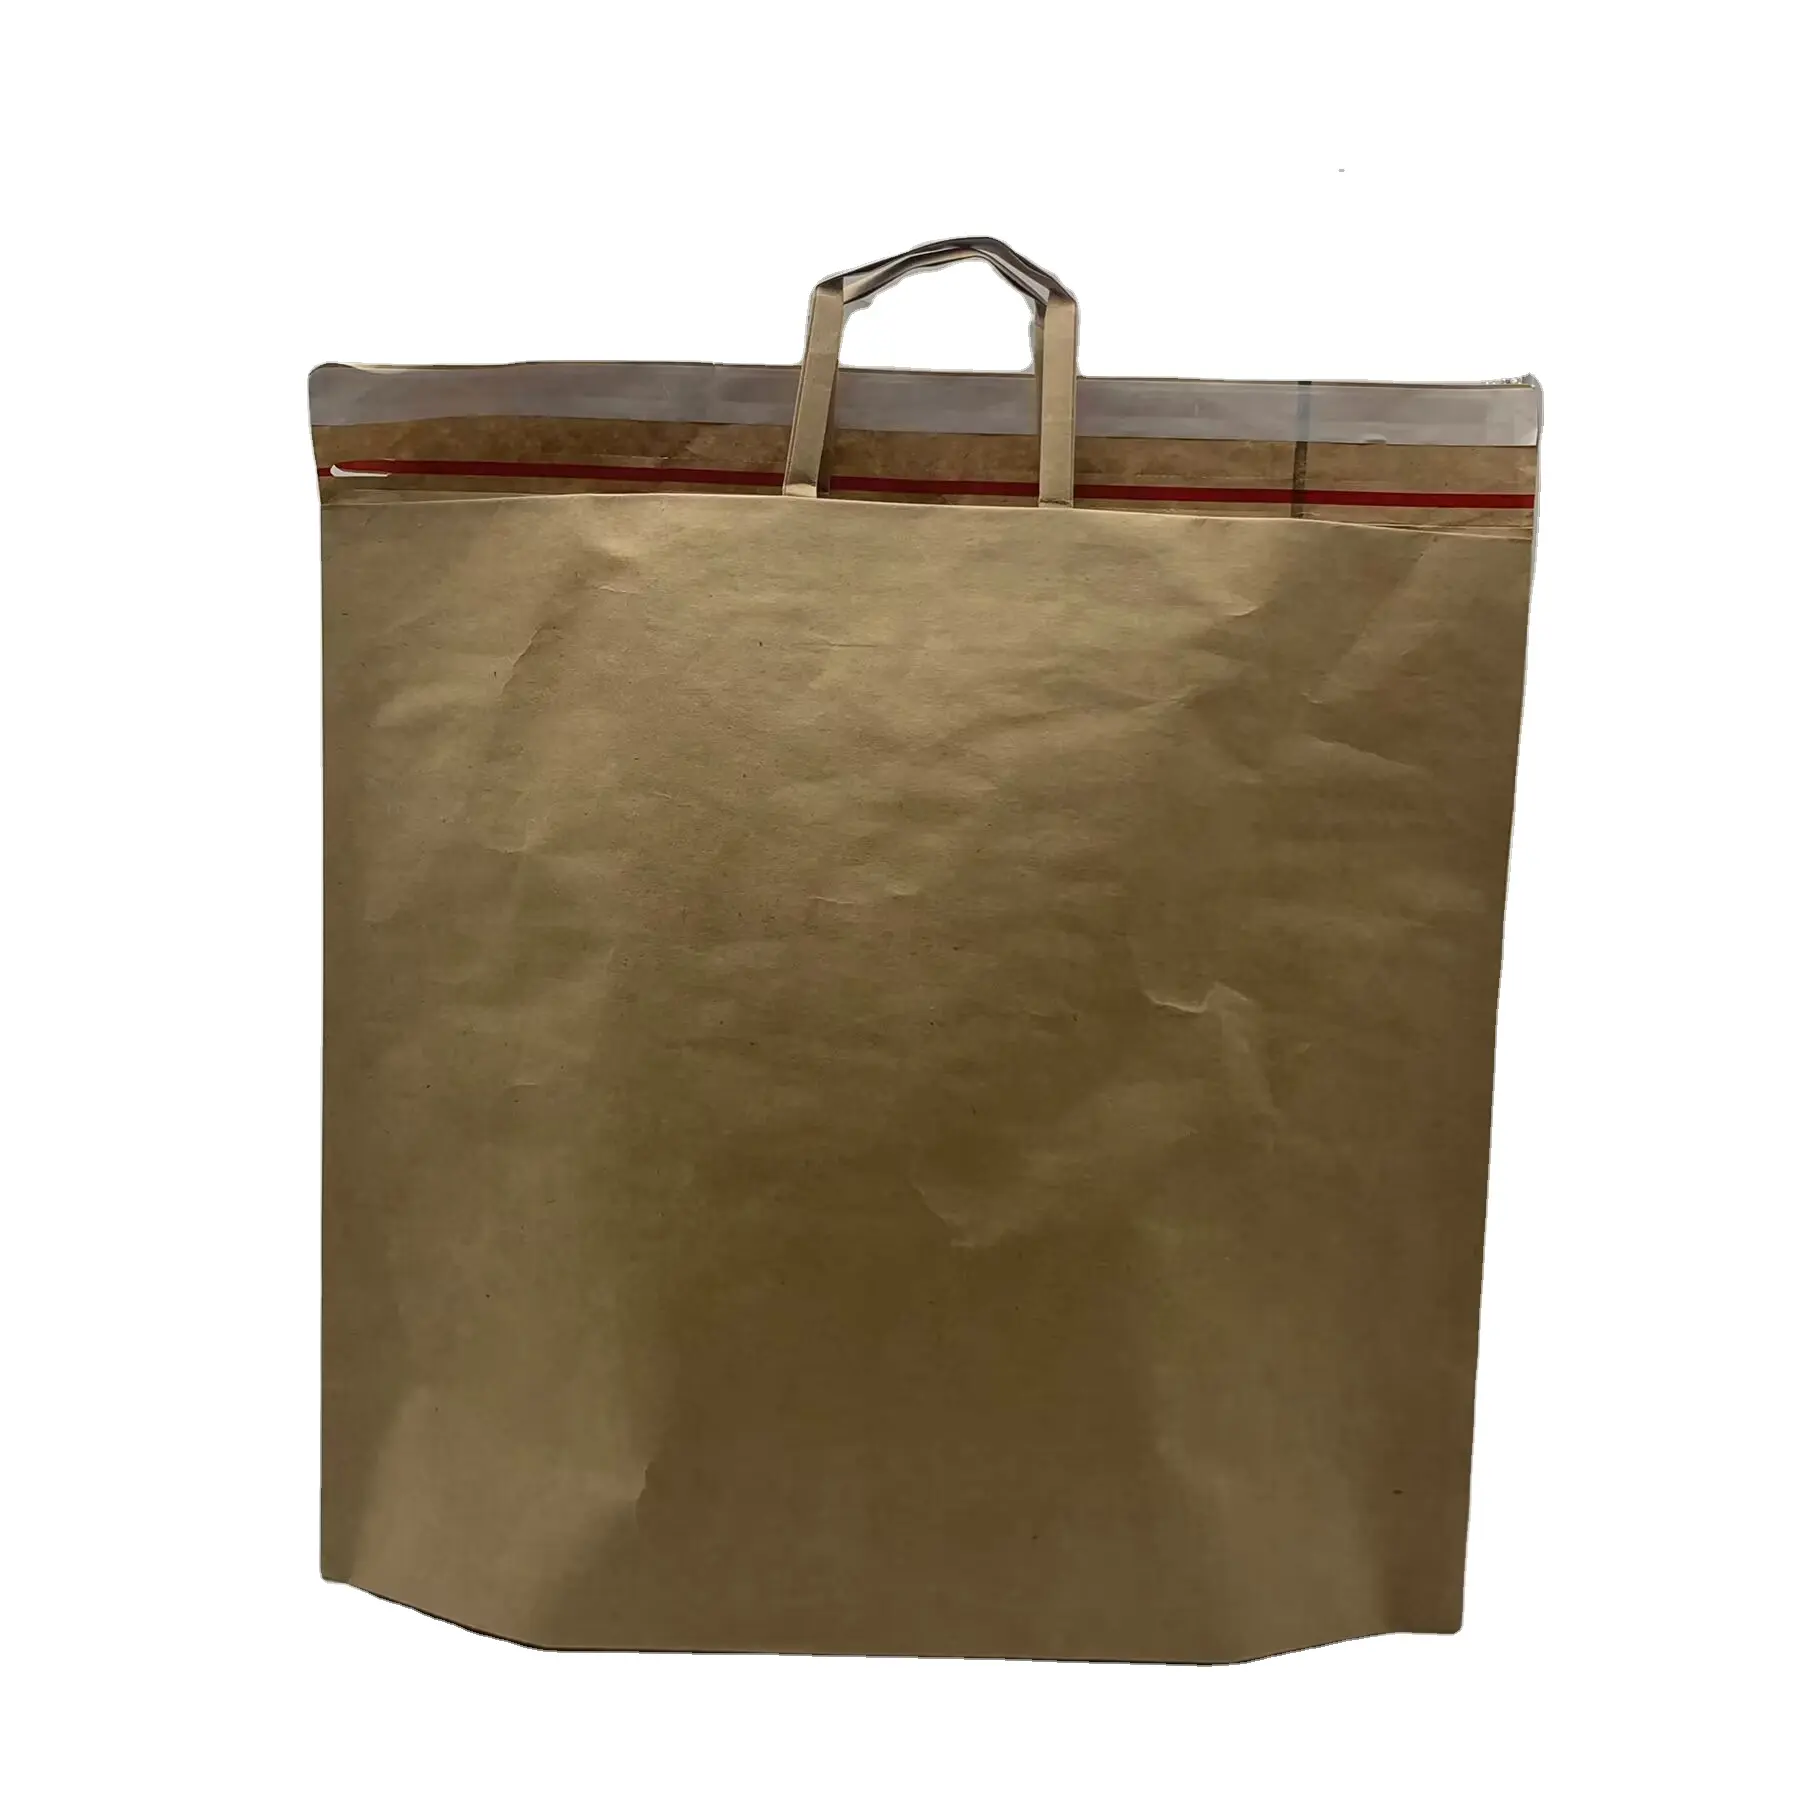 맞춤형 크래프트 종이 가방은 익스프레스 포장 의류 쇼핑 및 종이 가방을 위해 재활용 할 수 있습니다